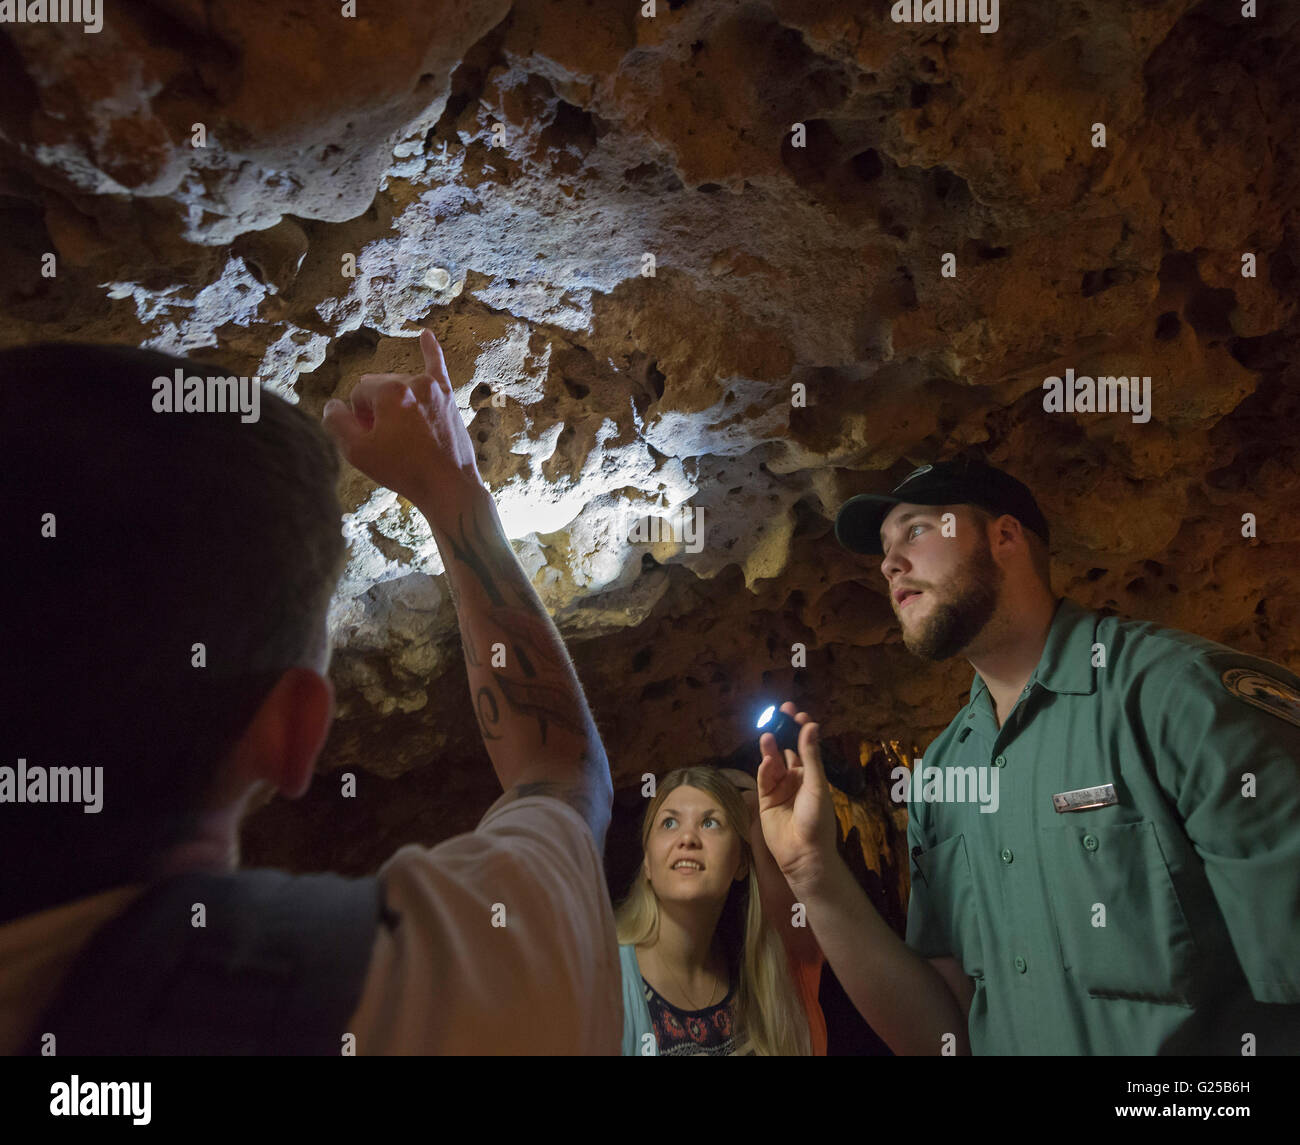 Florida Caverns State Park en Marianna, Florida ofrece excursiones a través de cuevas fantásticas formaciones geológicas de piedra caliza. Foto de stock